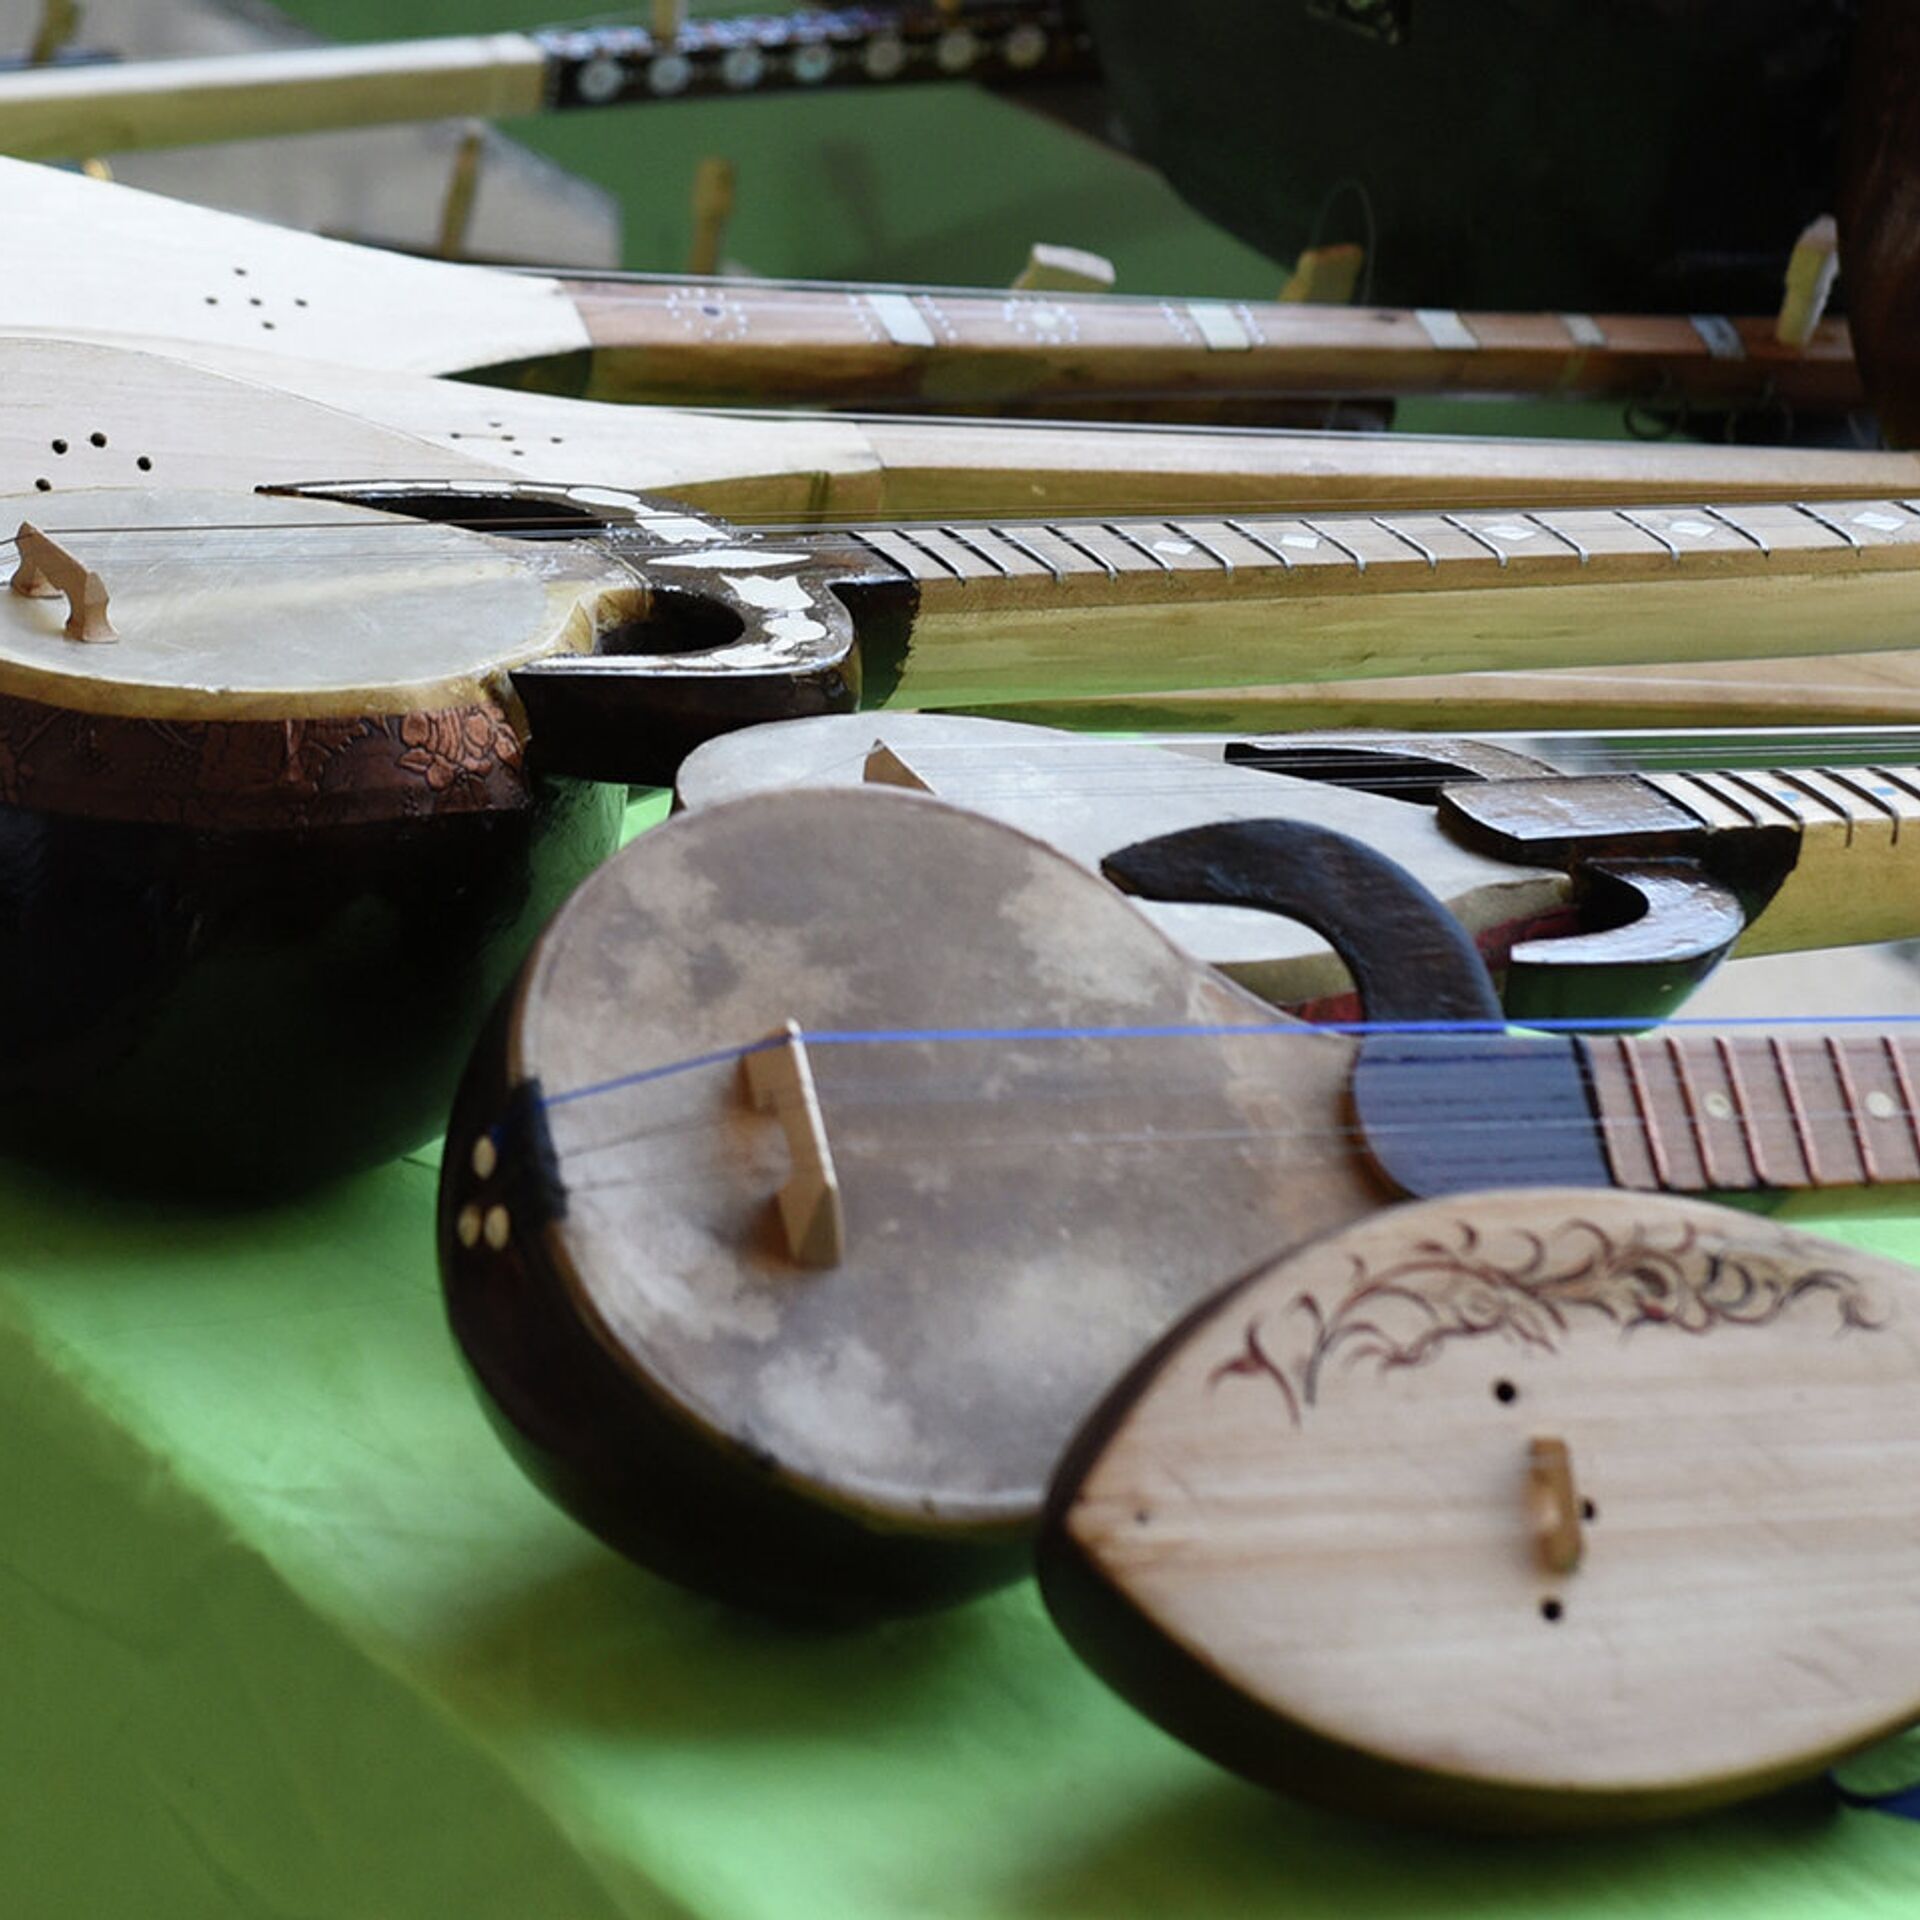 Таджикский инструмент. Нац музыкальные инструменты Таджикистана. Таджикский музыкальный инструмент рубаб. Такжитскийрубаб музыкальный инструмент. Народные инструменты Таджикистана.